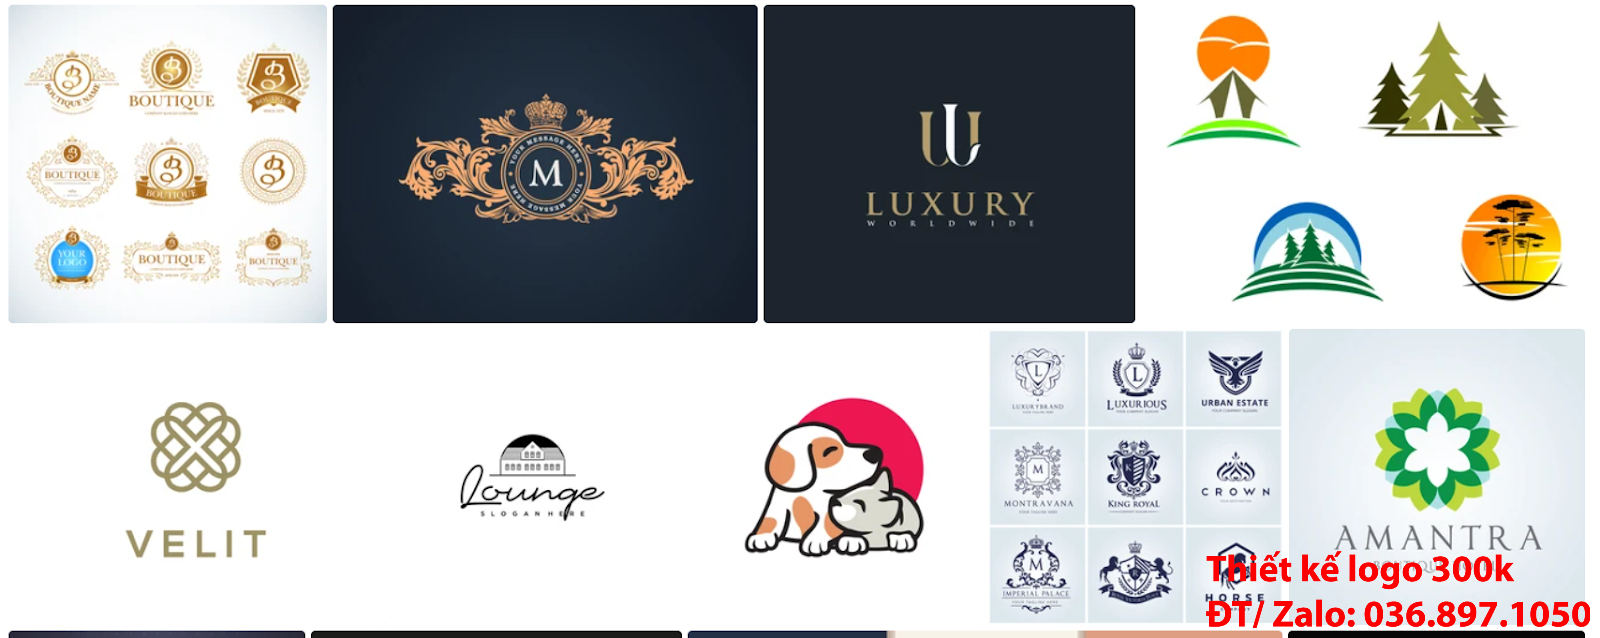 Nhận tạo Ý nghĩa logo khách sạn resort nhà nghỉ độc đáo online giá rẻ đẹp chuyên nghiệp chất lượng 300k - 500k